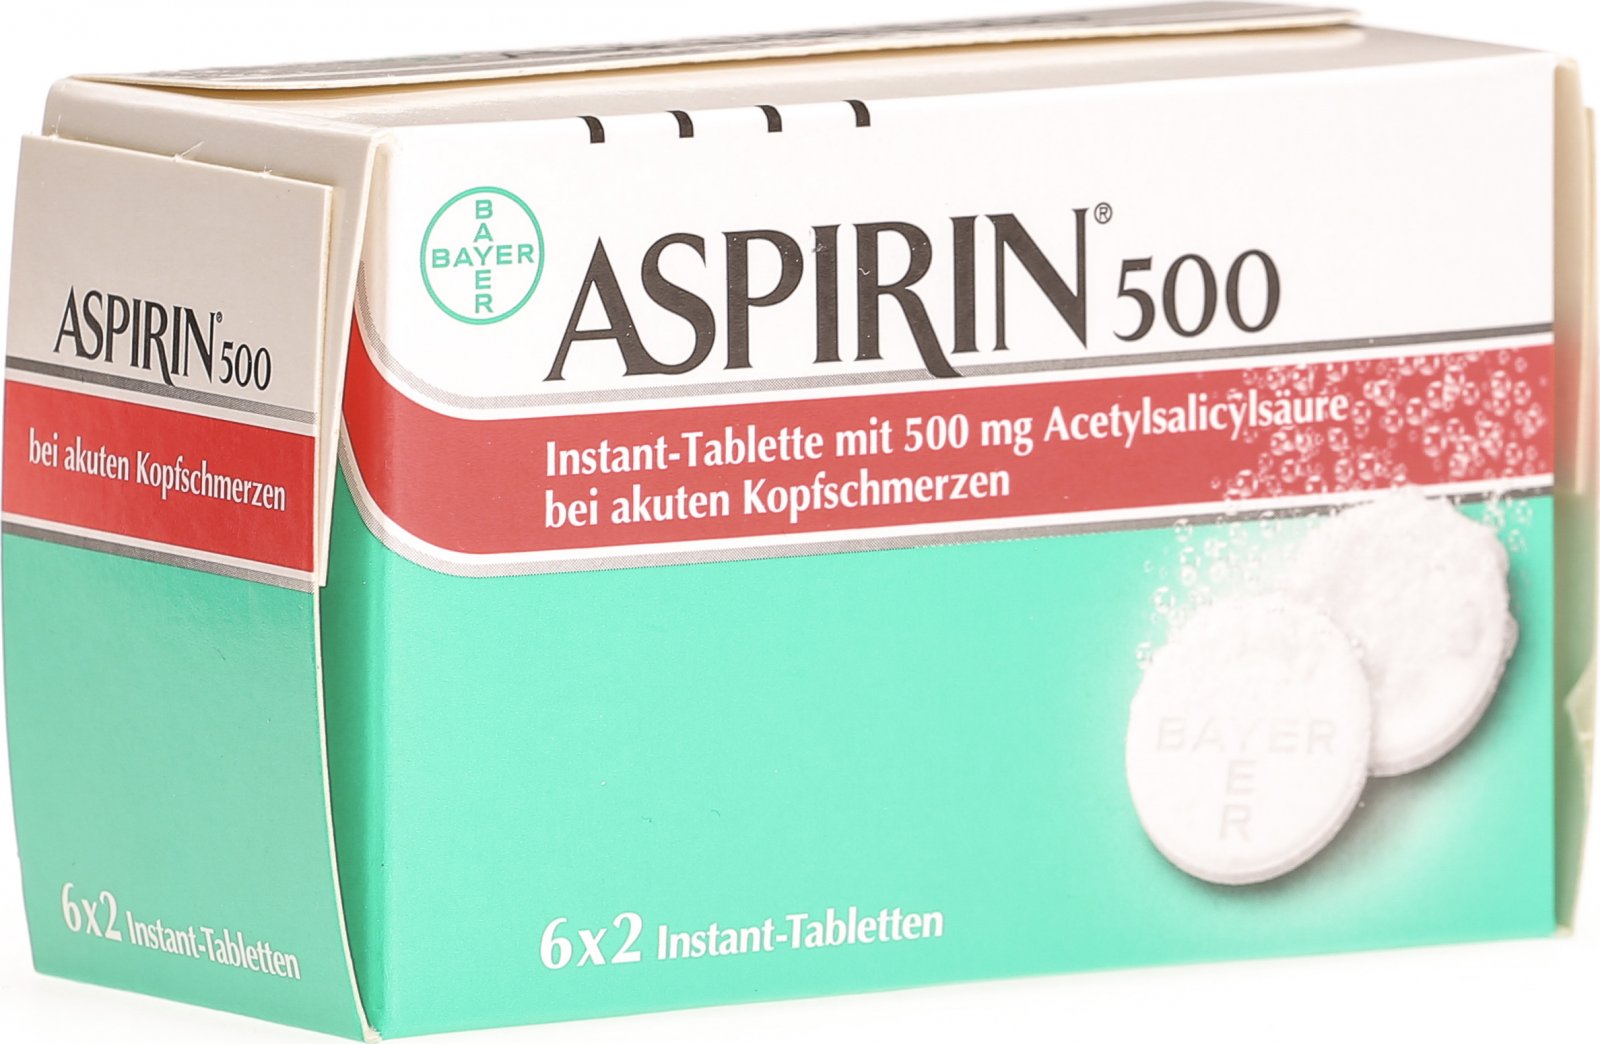 Aspirin Migrane 500mg 6x2 Brausetabletten In Der Adler Apotheke